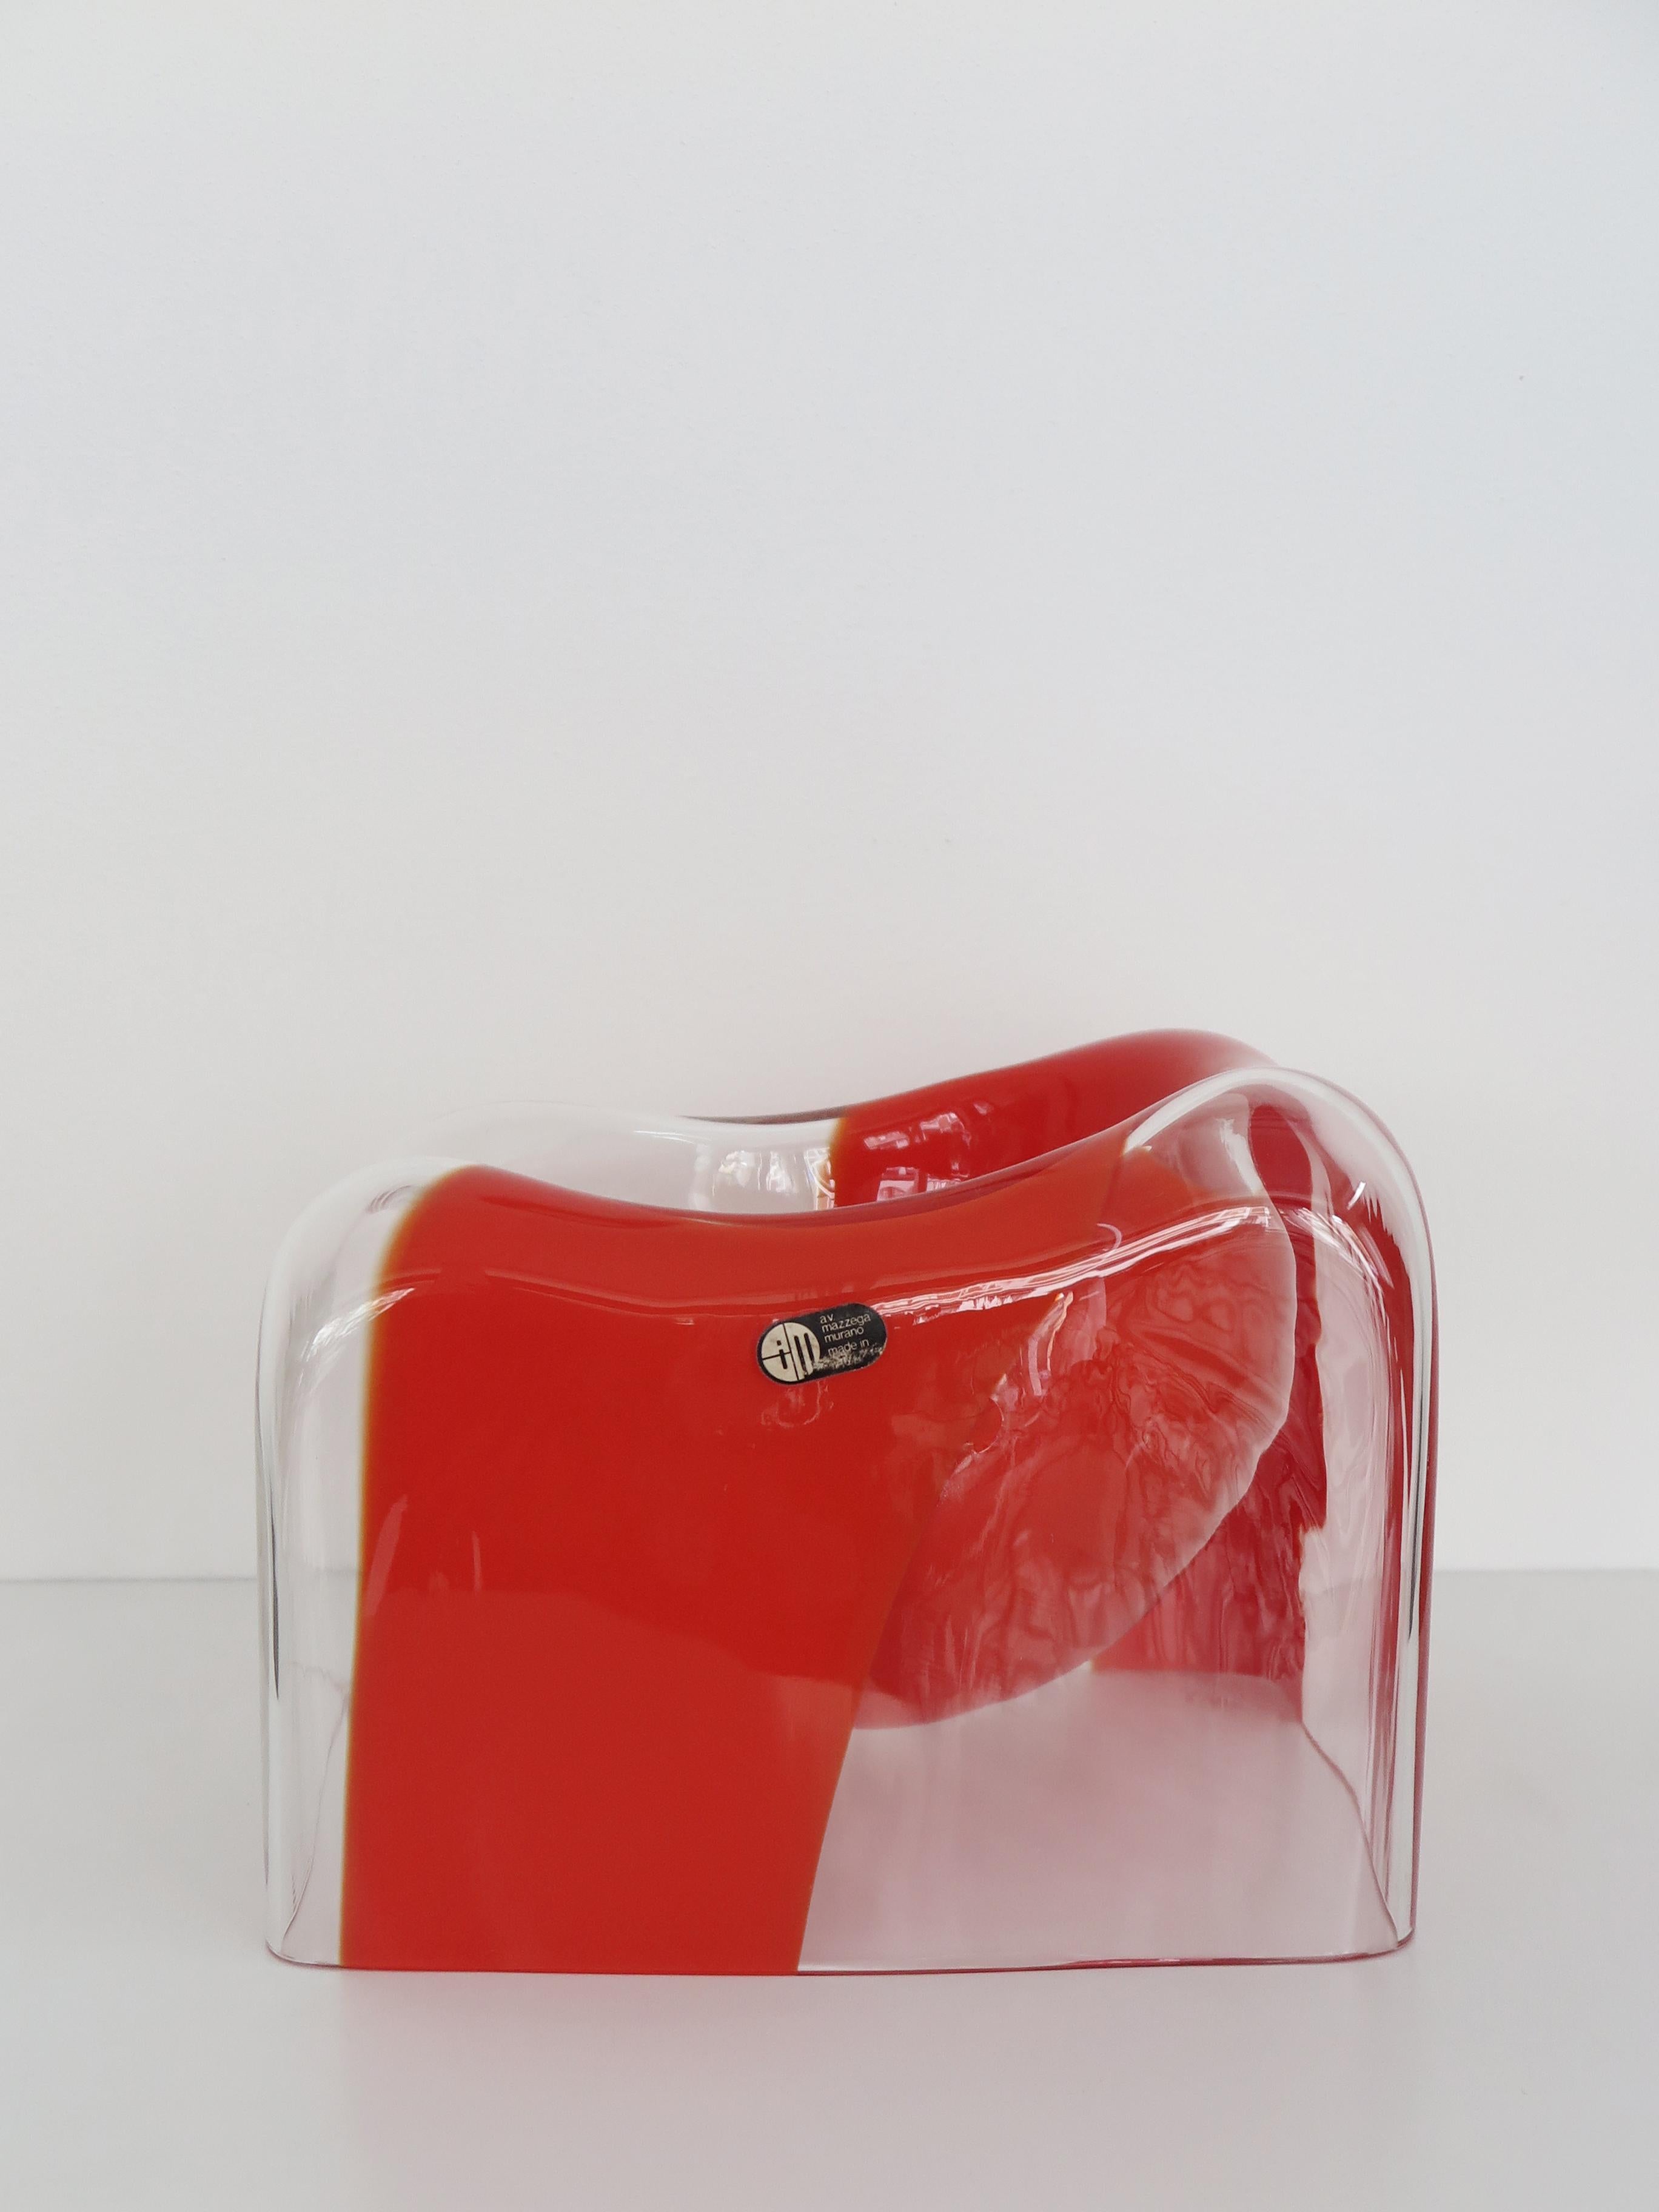 Vase sculpture italien en verre de Murano conçu par Carlo Nason pour la verrerie Mazzega, en verre transparent avec bande centrale de couleur corail, étiquette adhésive du fabricant Italie 1970